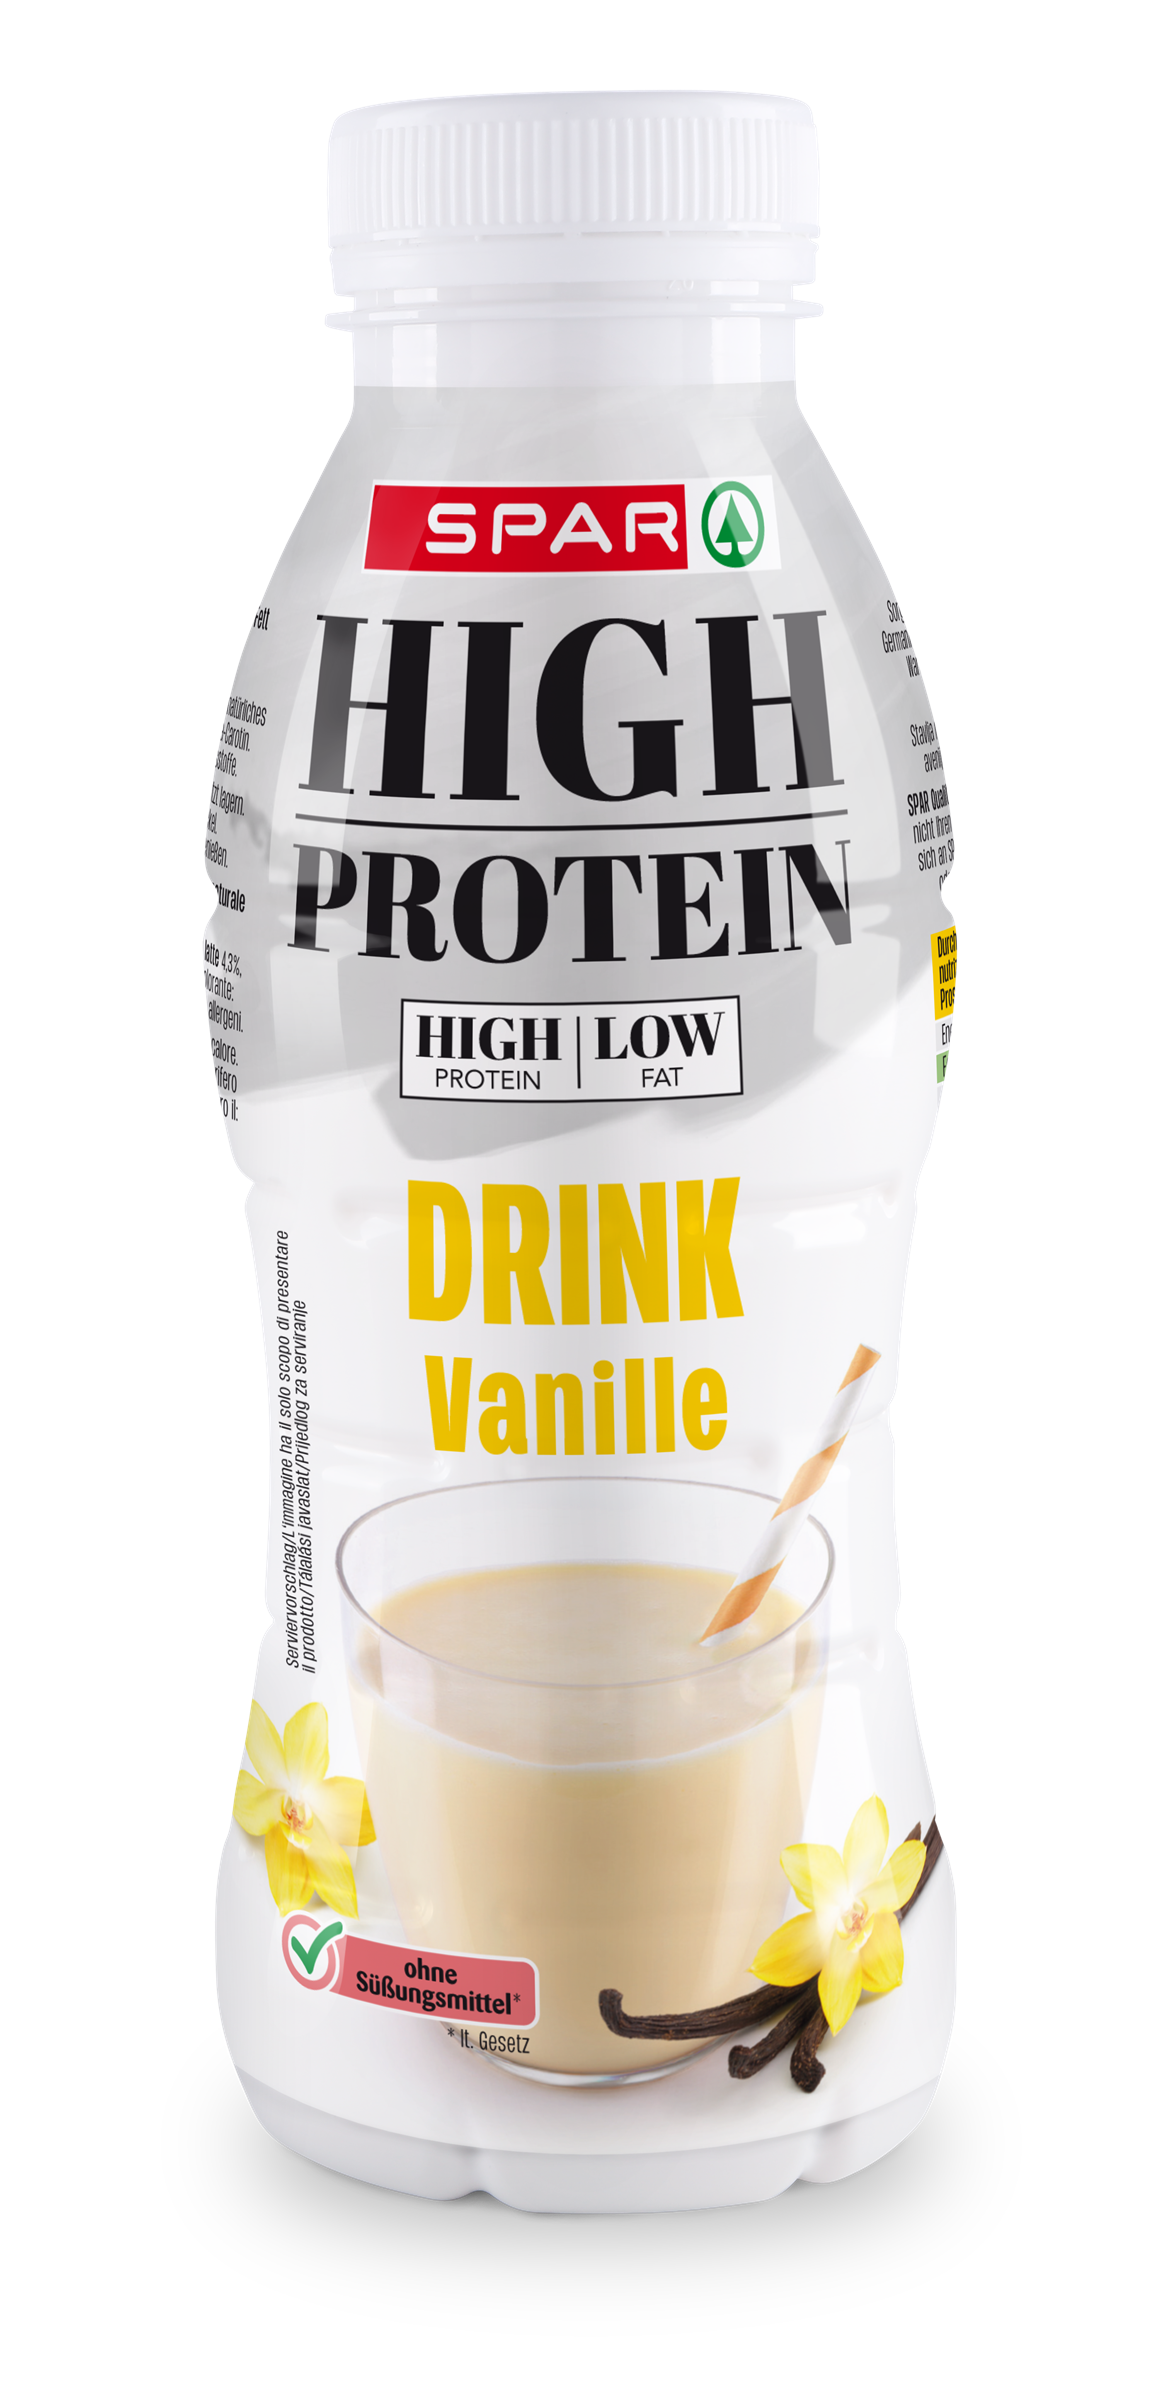 SPAR_High_Protein_Drink_Vanille